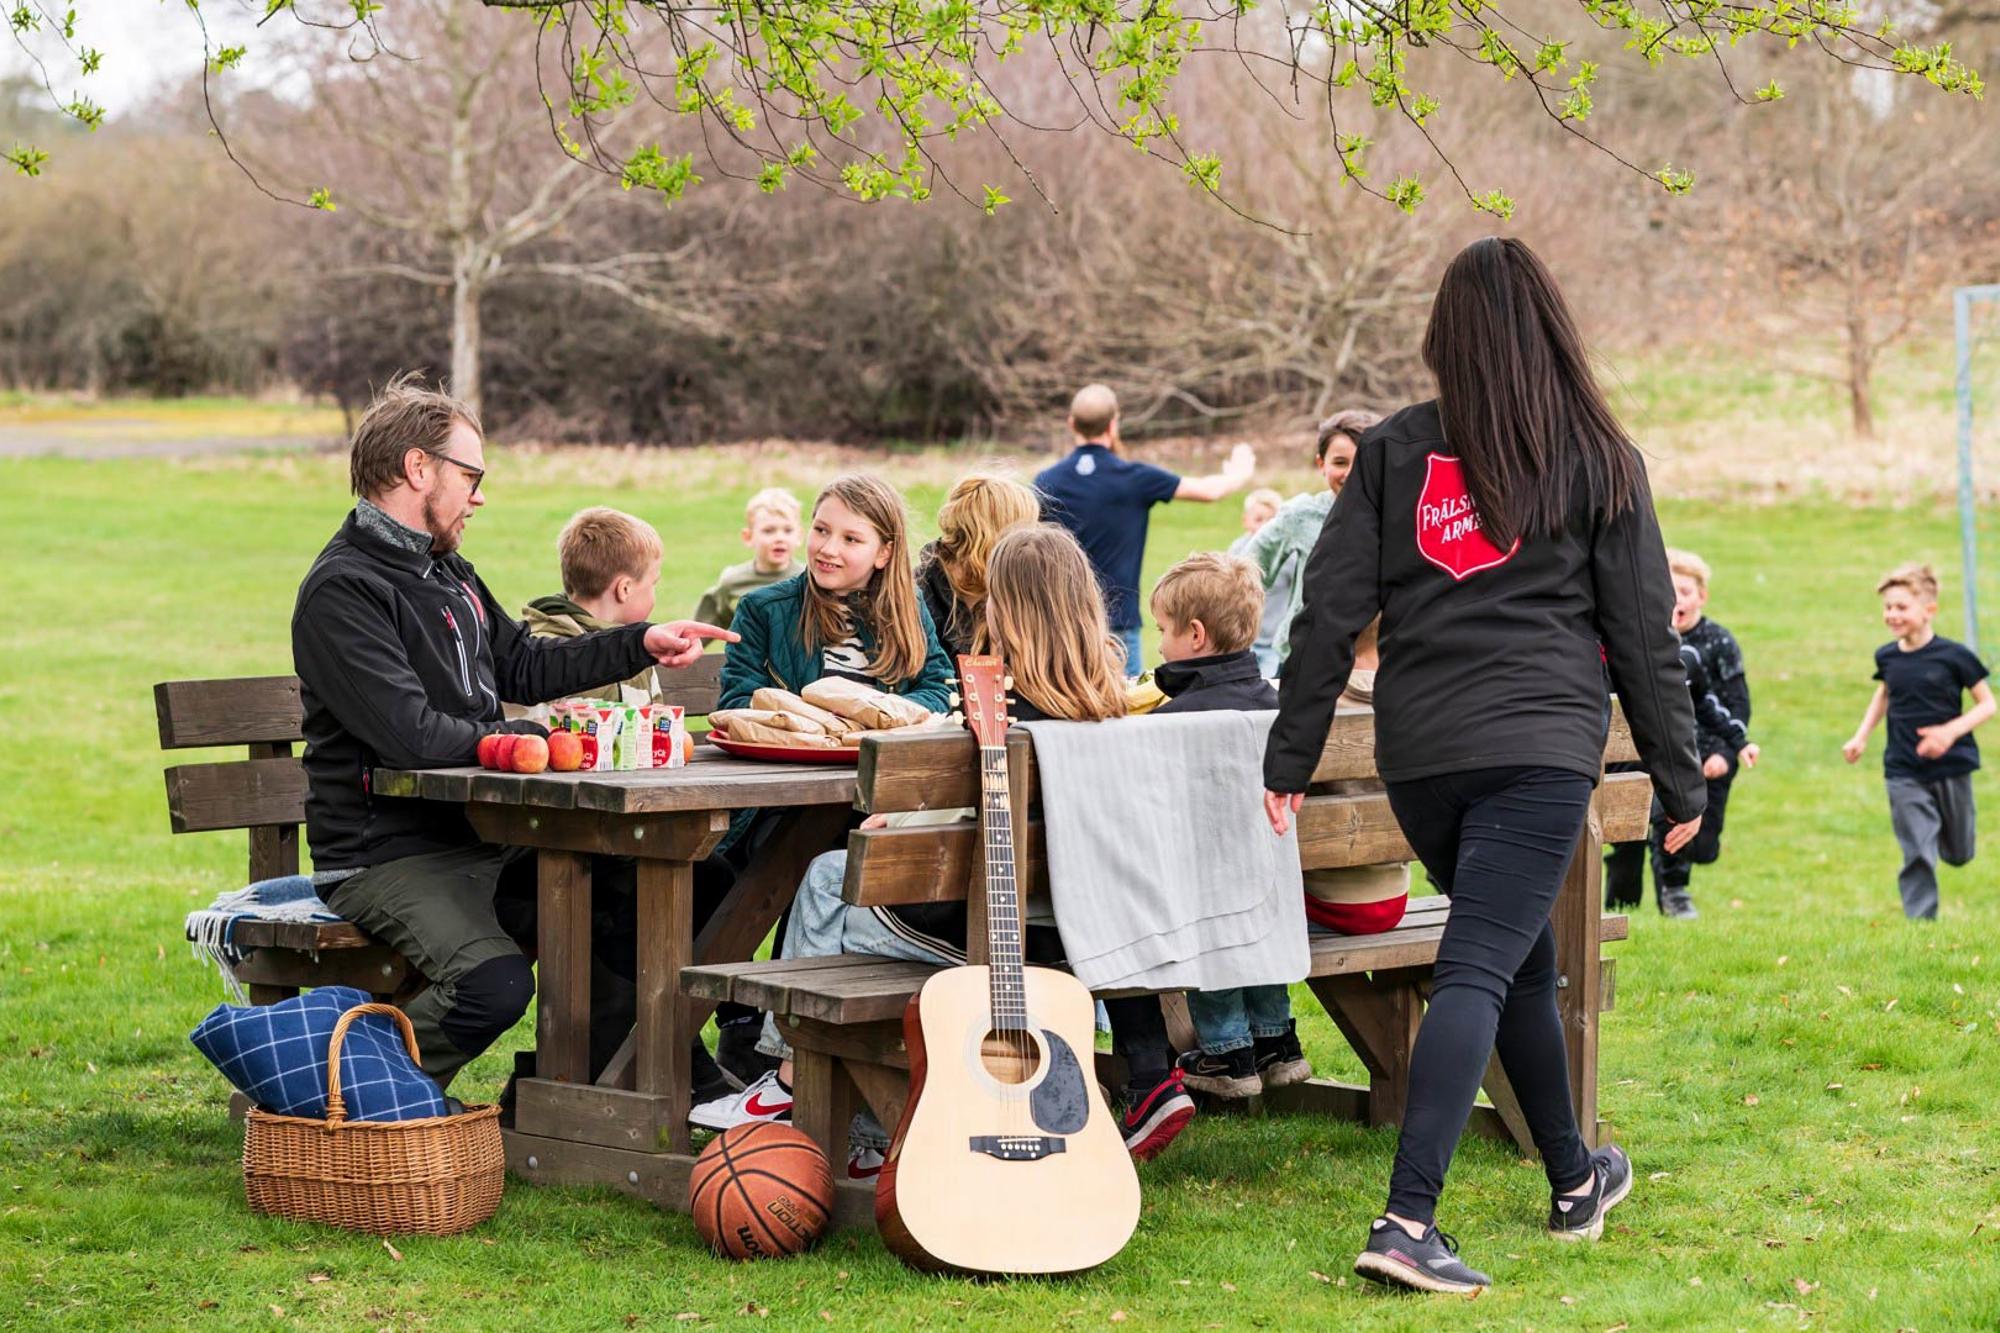 Några barn och vuxna kring ett picknickbord med frukt och juice, på sidan syns en gitarr, en basketboll och en picknickkorg. I bakgrunden syns ett grönområde med barn som spelar fotboll.